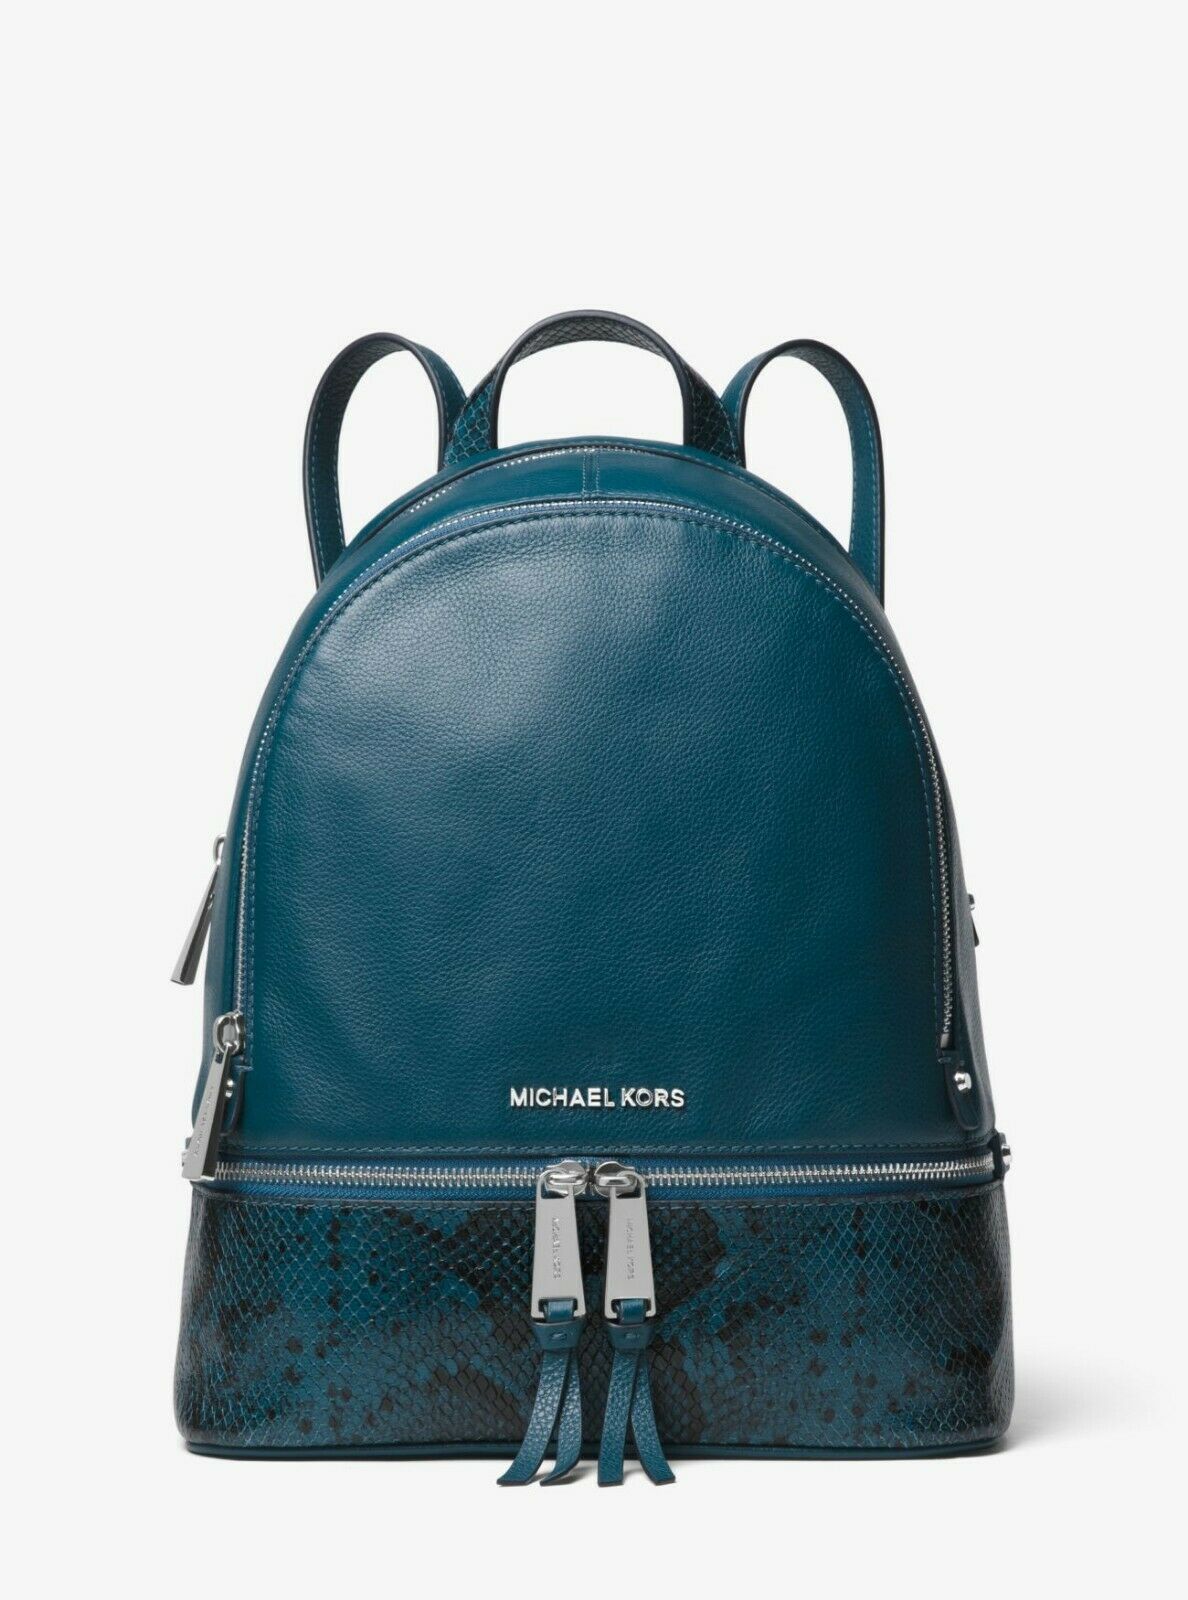 michael kors susie backpack